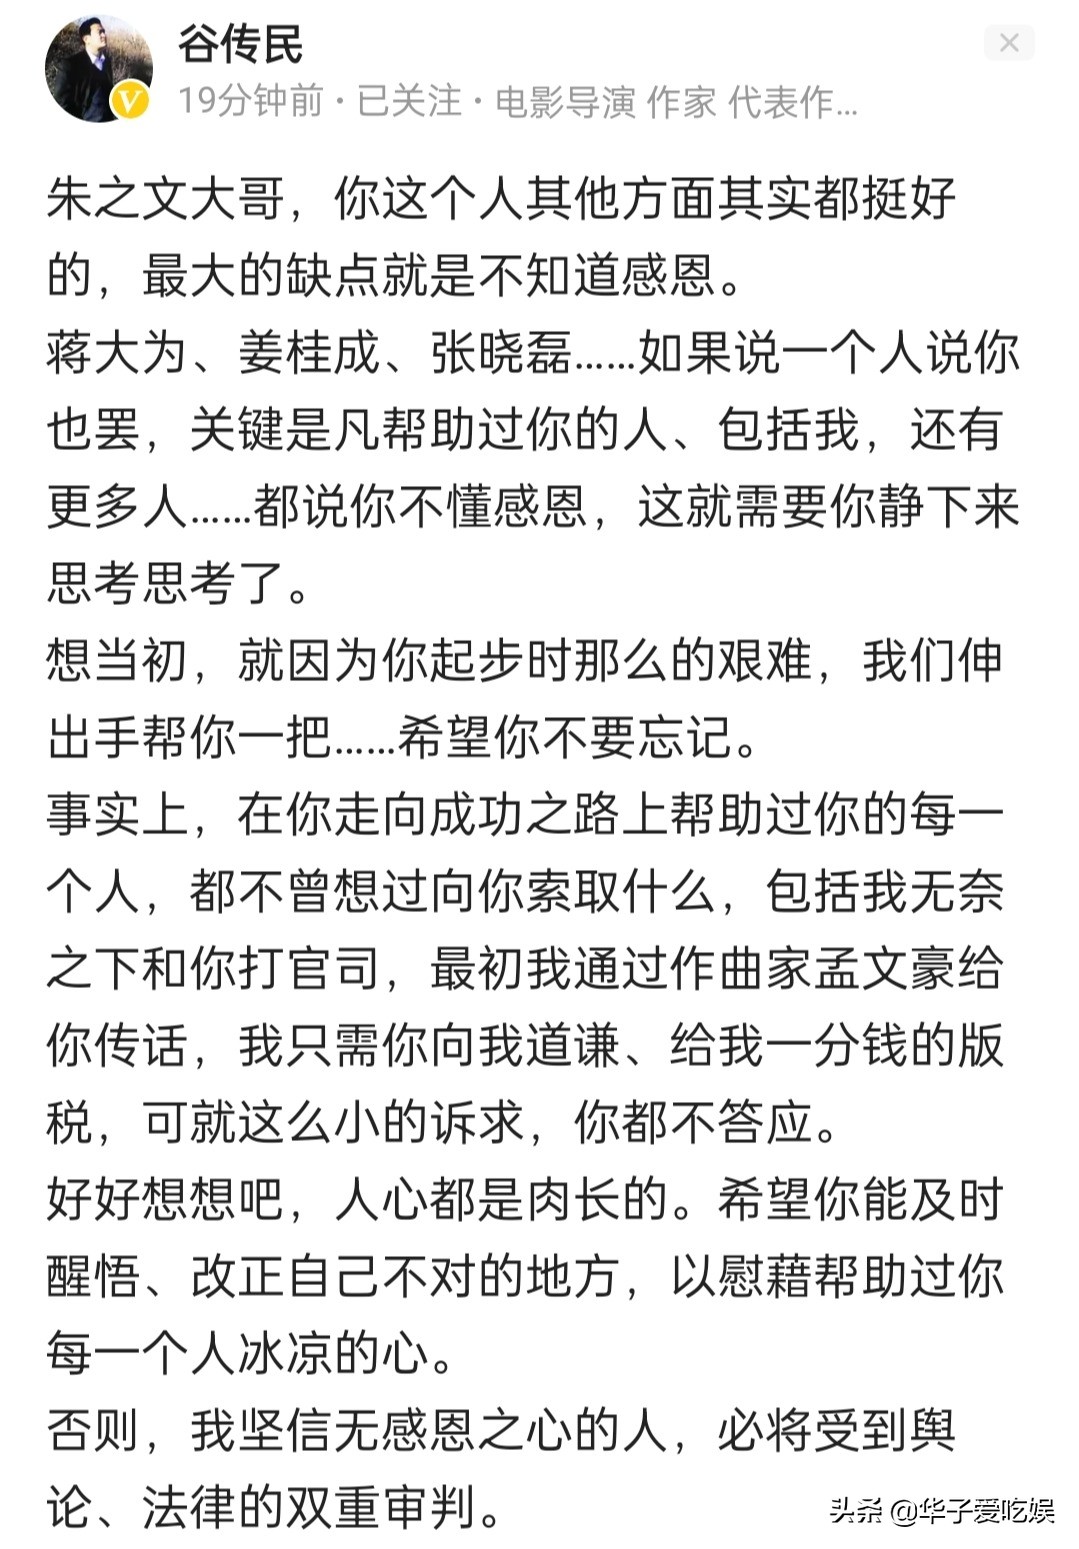 作家谷传民宣布：与朱之文版权纠纷已正式立案，静等法律的判决